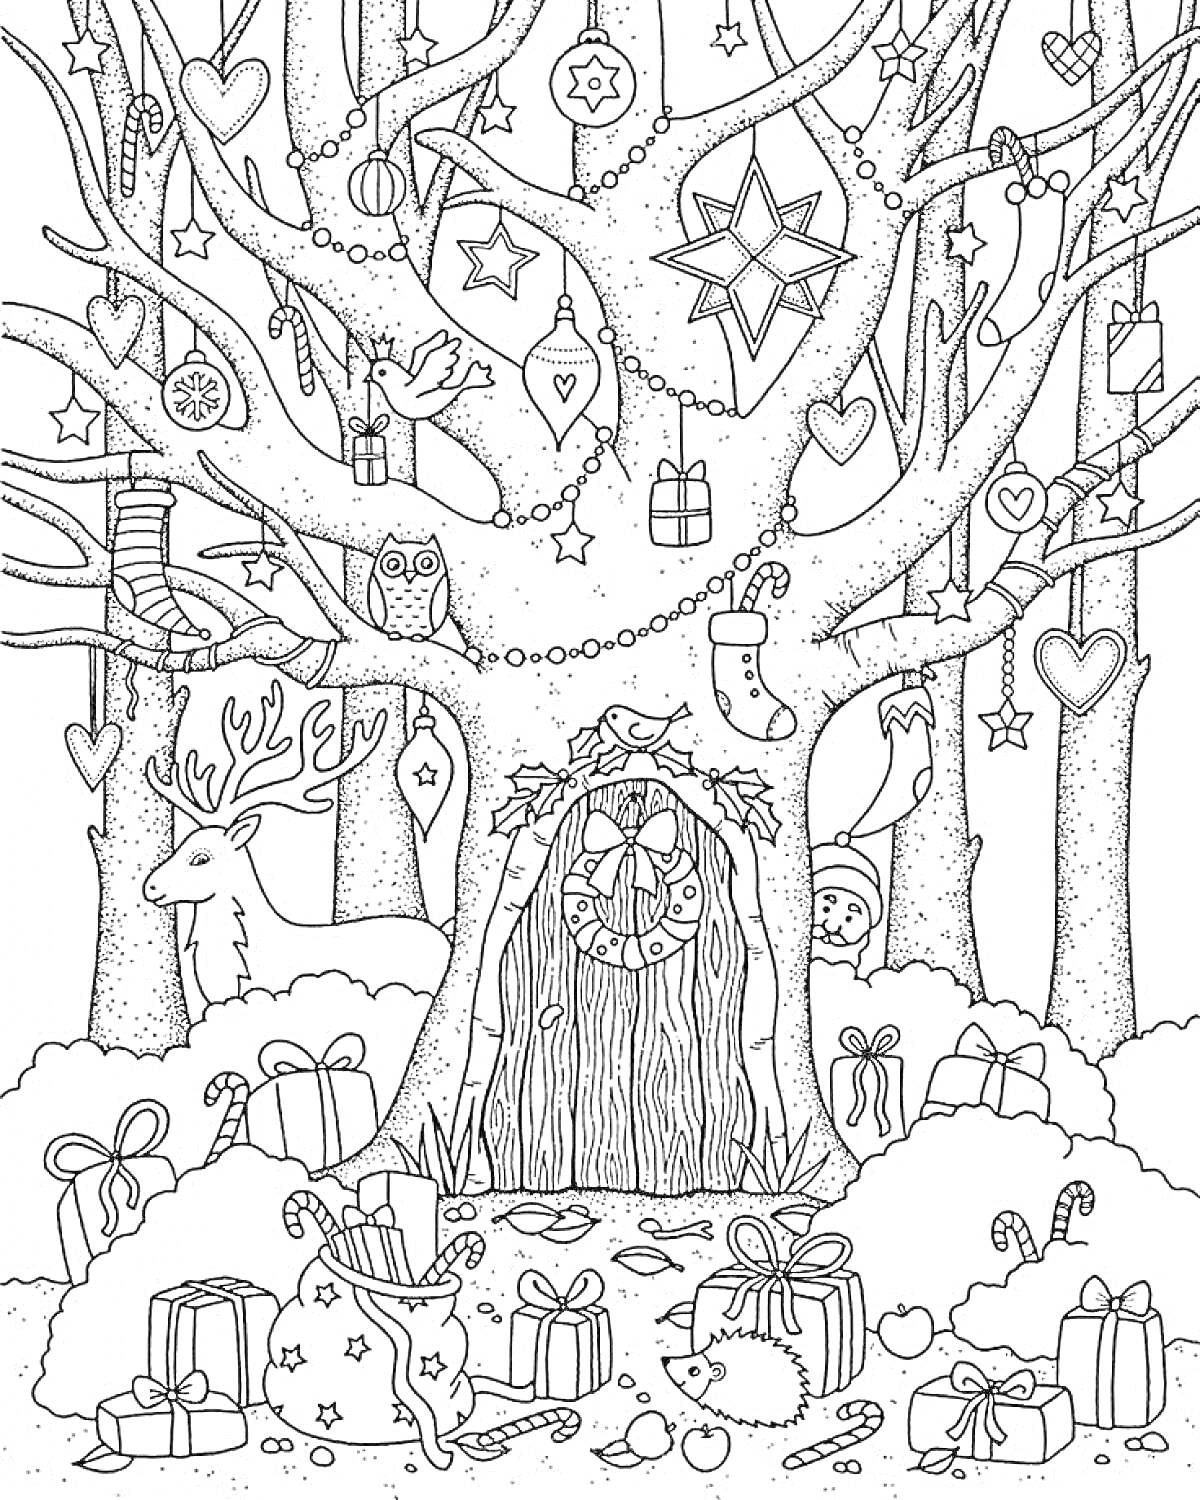 Раскраска Новогодняя сцена с украшенным деревом, подарками, оленем, совой, дверью в дерево, снежинками и рождественскими носками